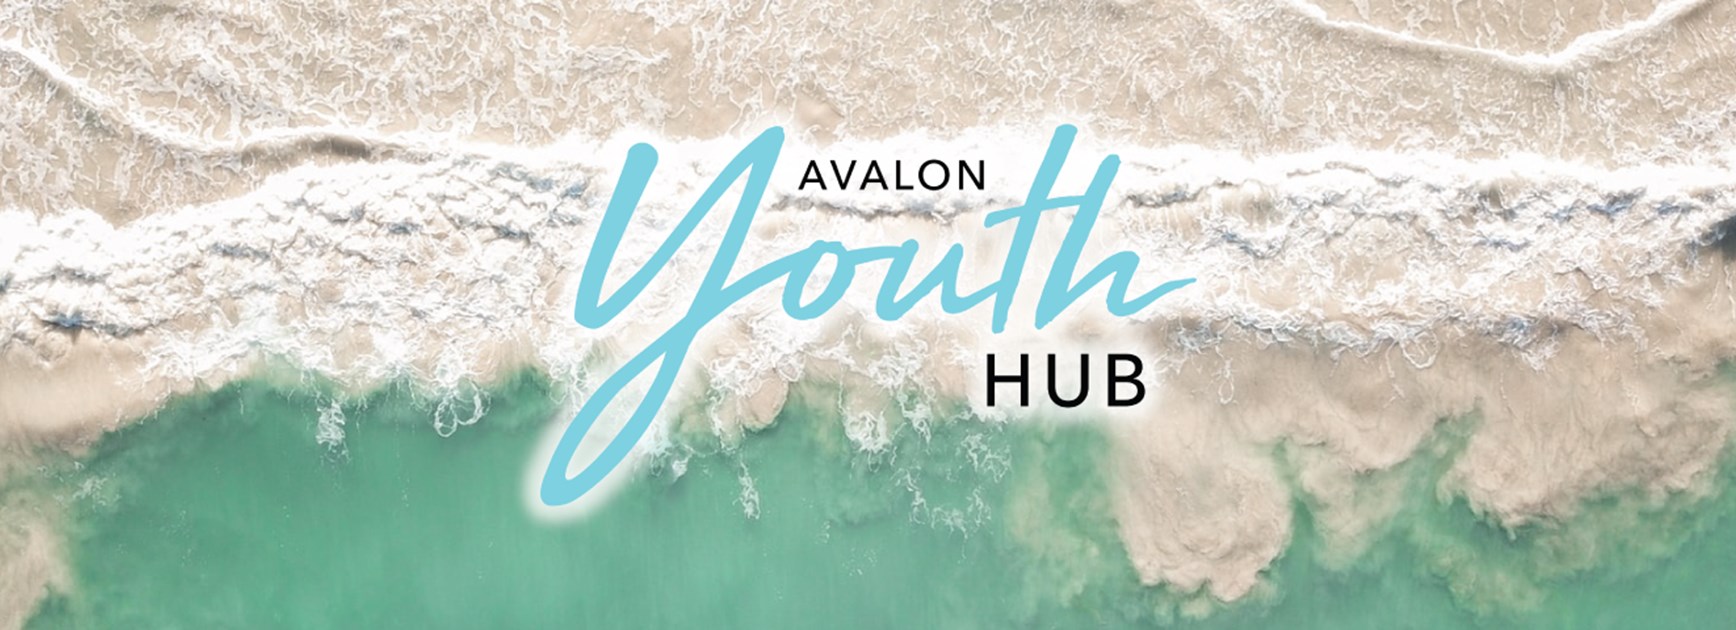 Community Episode 2: Tanya Preston & Ash Downey (Avalon Youth Hub)